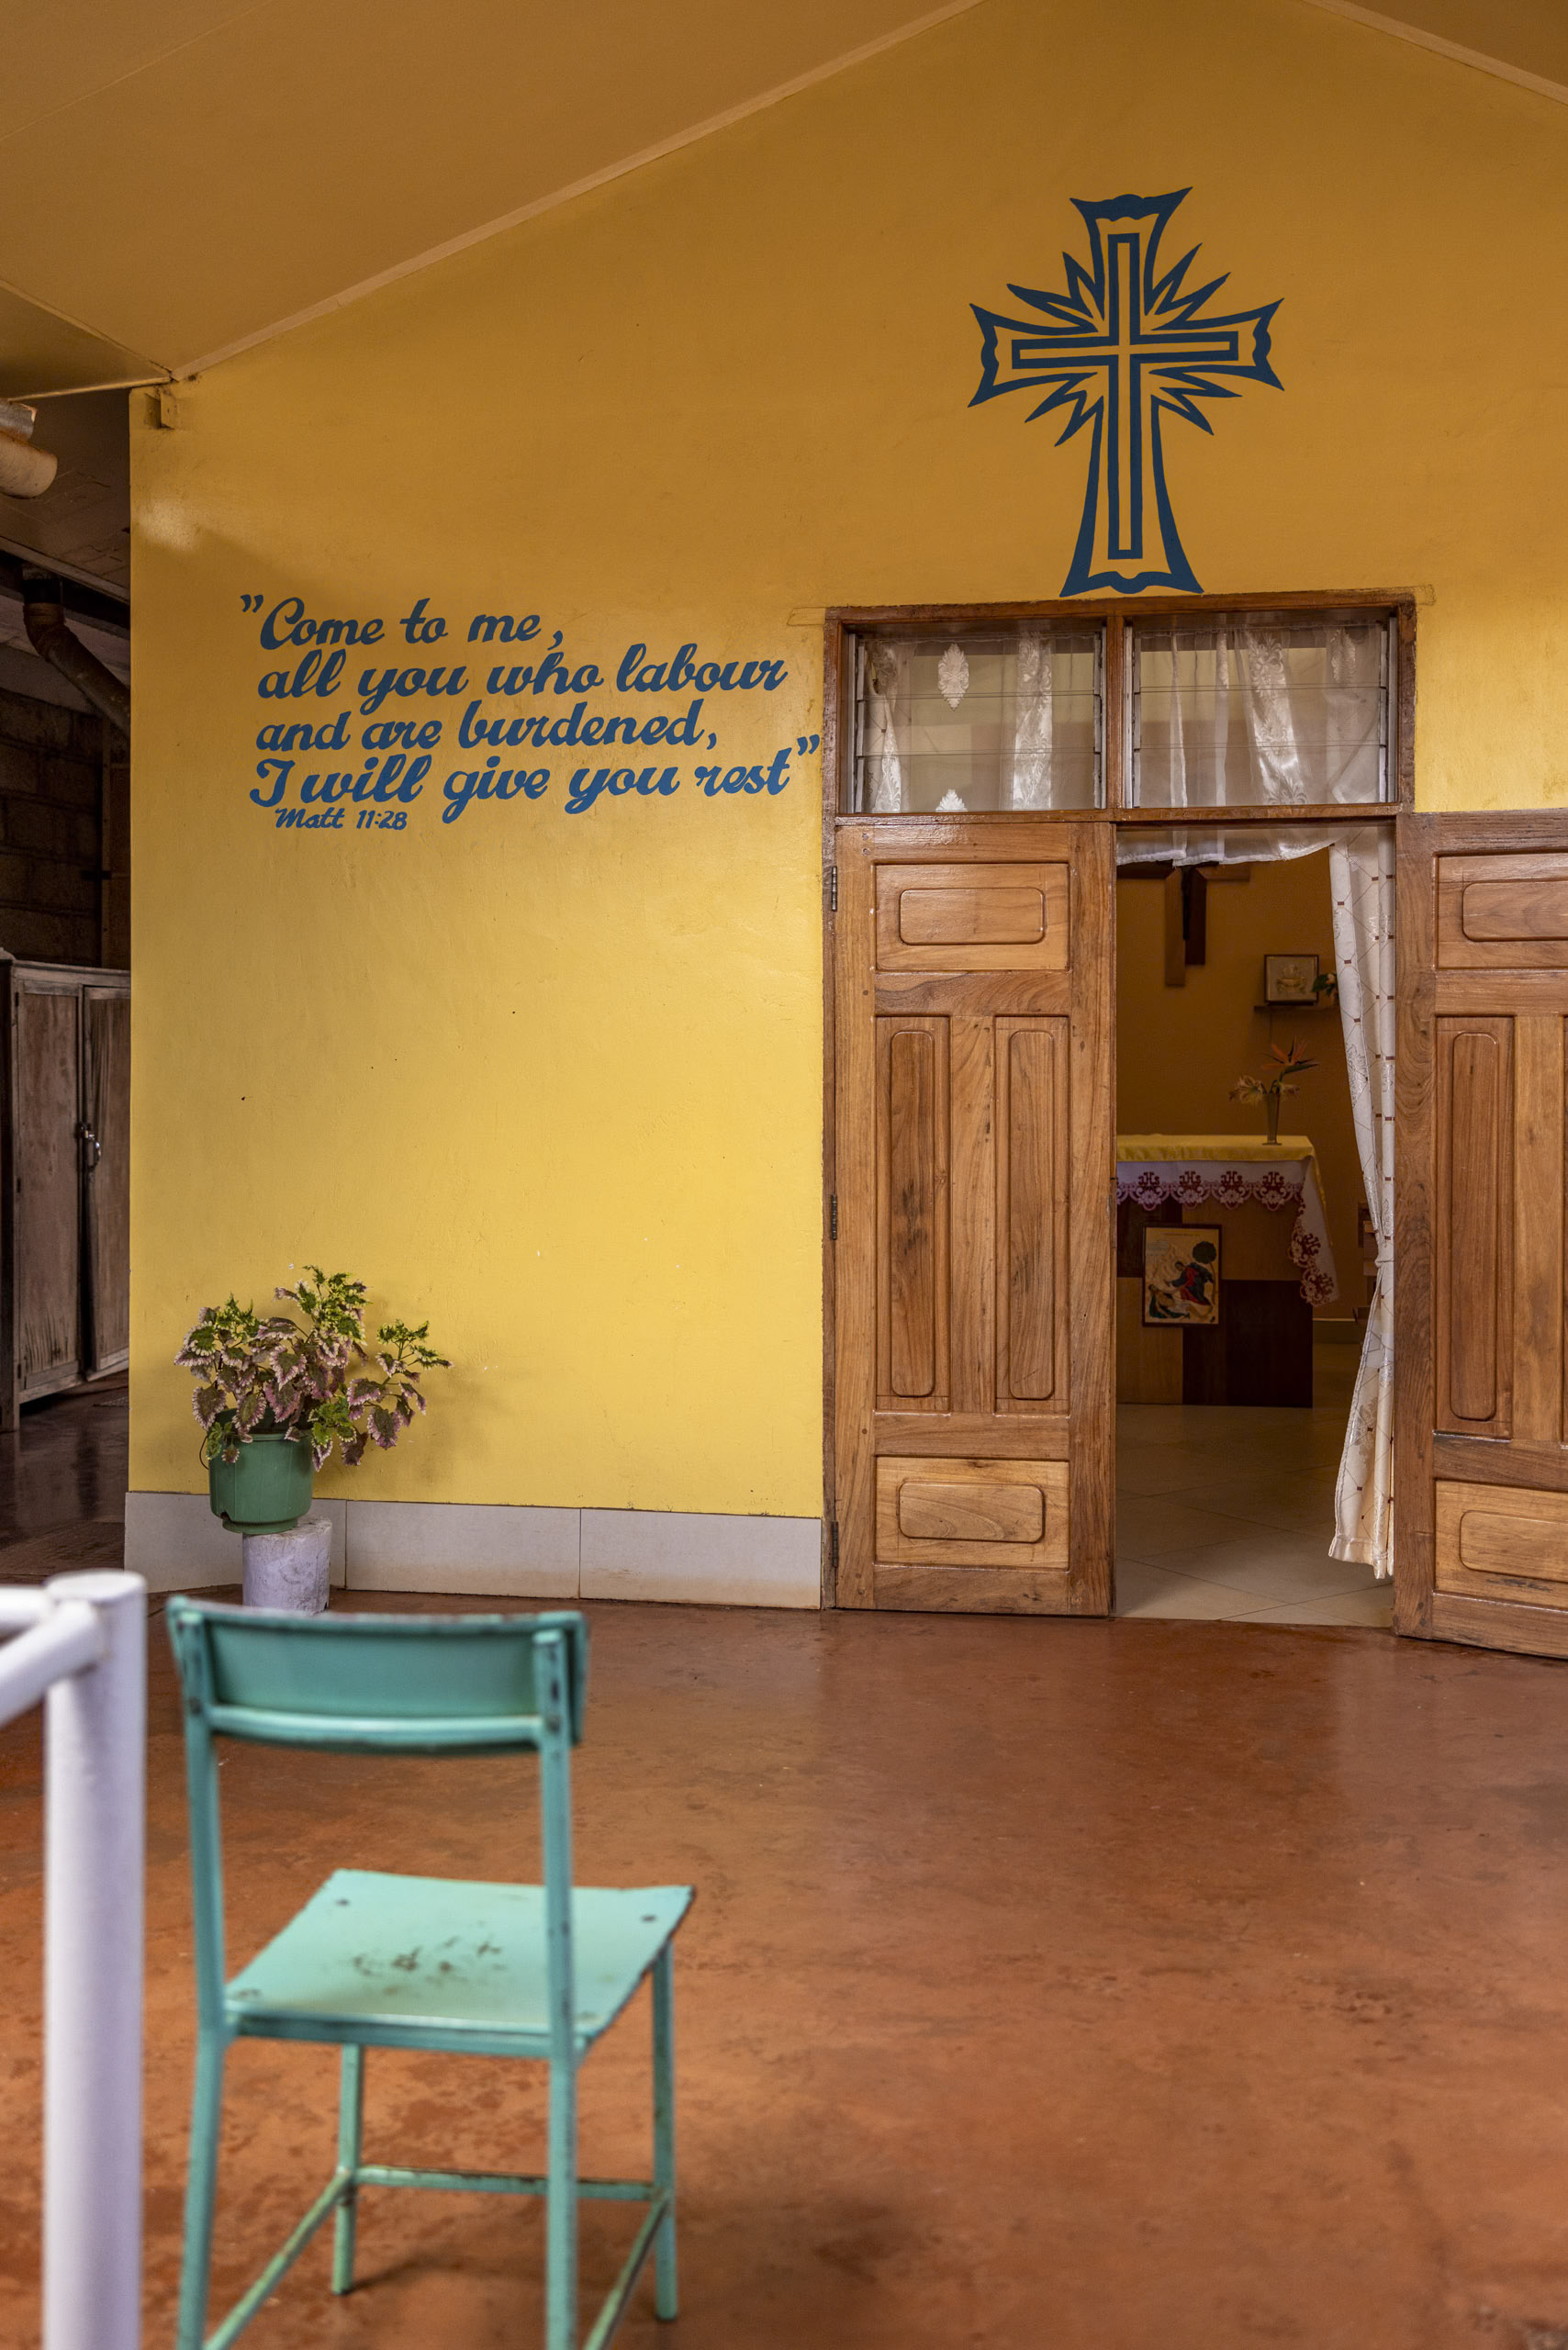 Innenansicht einer Kirche mit warmen gelben Wänden, einem leuchtend blauen Kreuz und einem Bibelzitat aus Matthäus 11:28. Holztüren führen zu einem kleinen Altar und im Vordergrund ist ein hellgrüner Stuhl zu sehen. © Fotografie Tomas Rodriguez